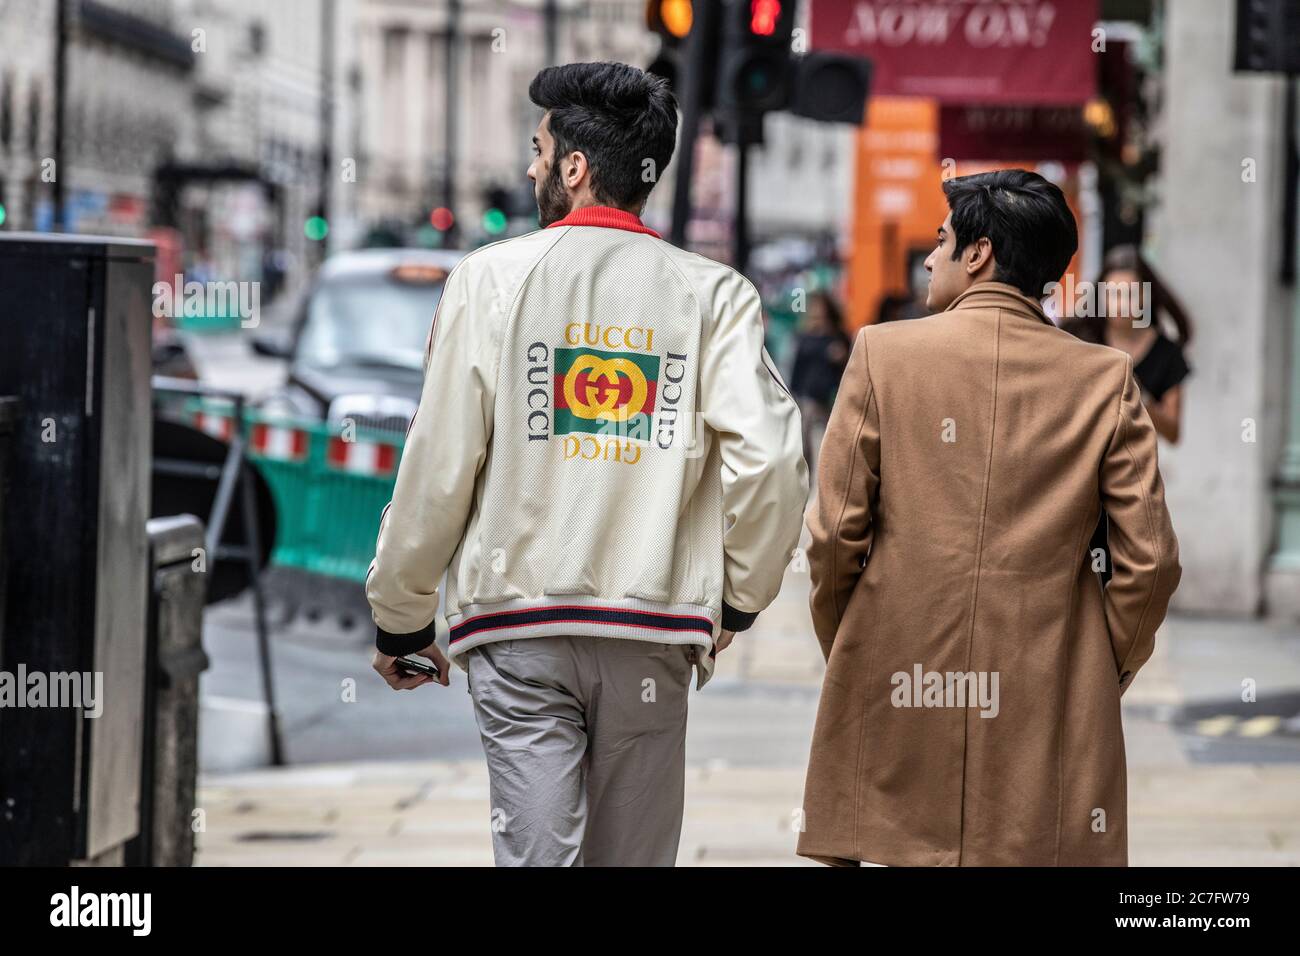 Uomini asiatici alla moda e ricchi che indossano marchi di abbigliamento firmati GUCCI che camminano lungo Piccadilly nel West End di Londra, Inghilterra, Regno Unito Foto Stock